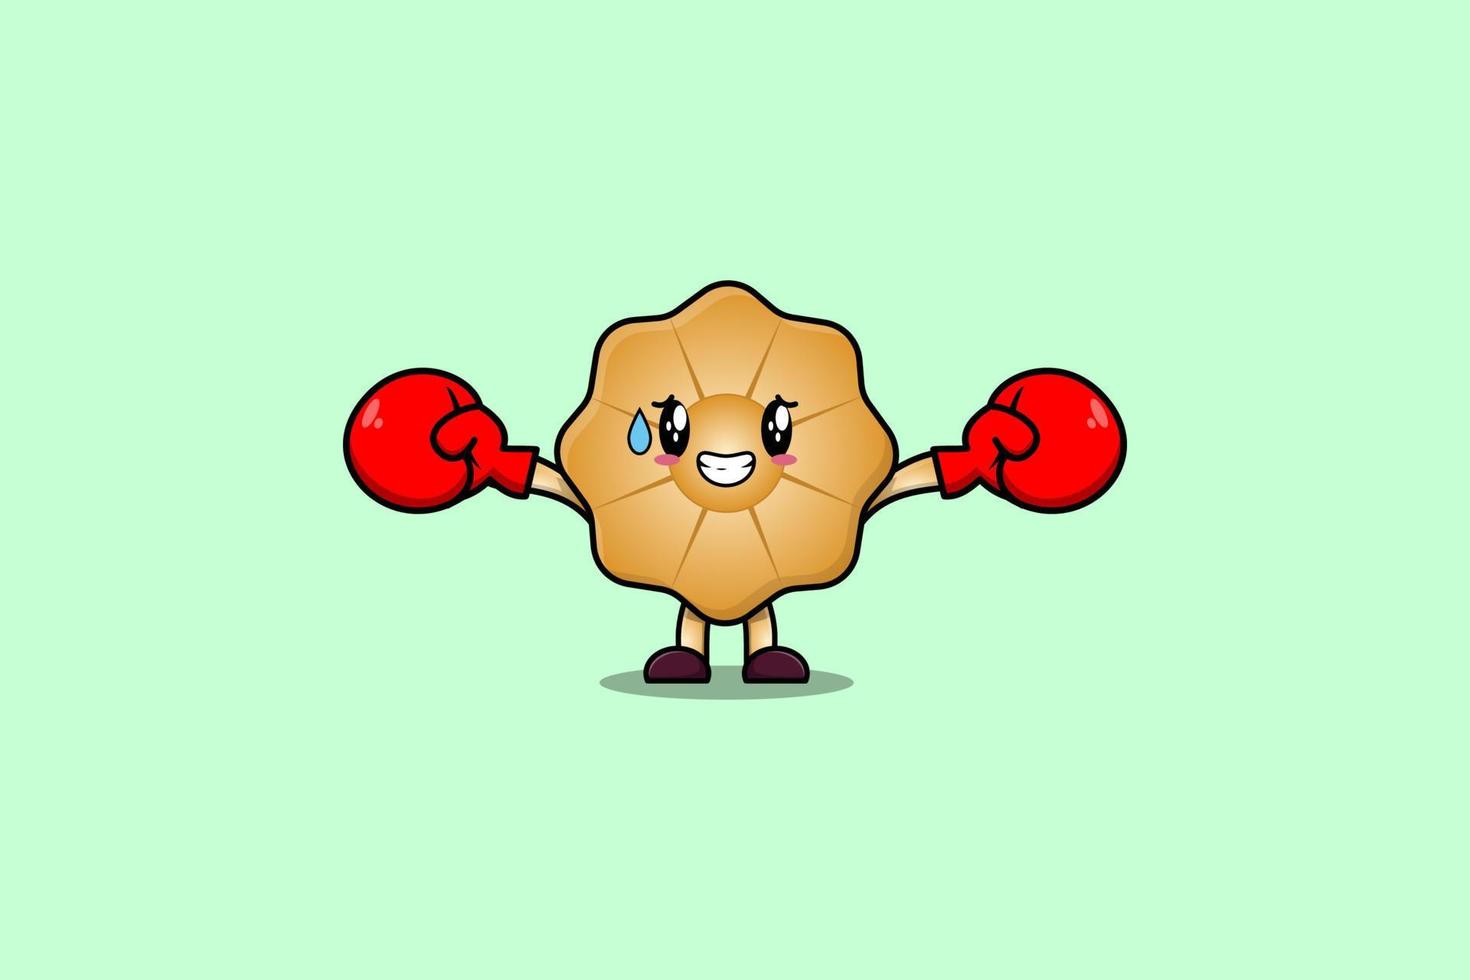 Cute cookies mascota dibujos animados jugar deporte con boxeo vector